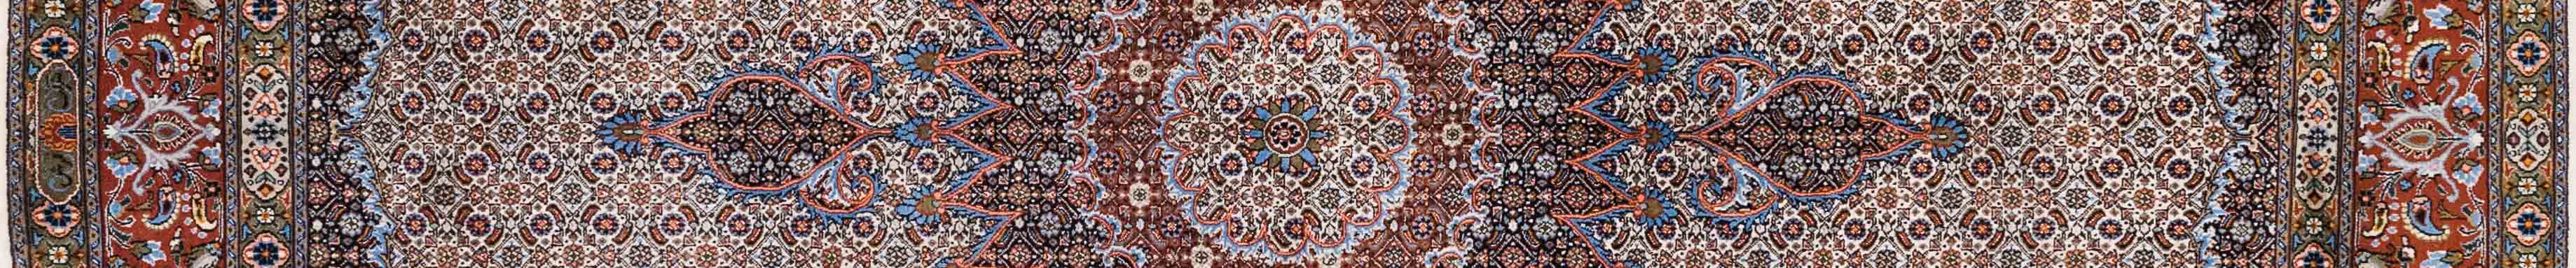 Moud Persian Carpet Rug N1Carpet Canada Montreal Tapis Persan 3450